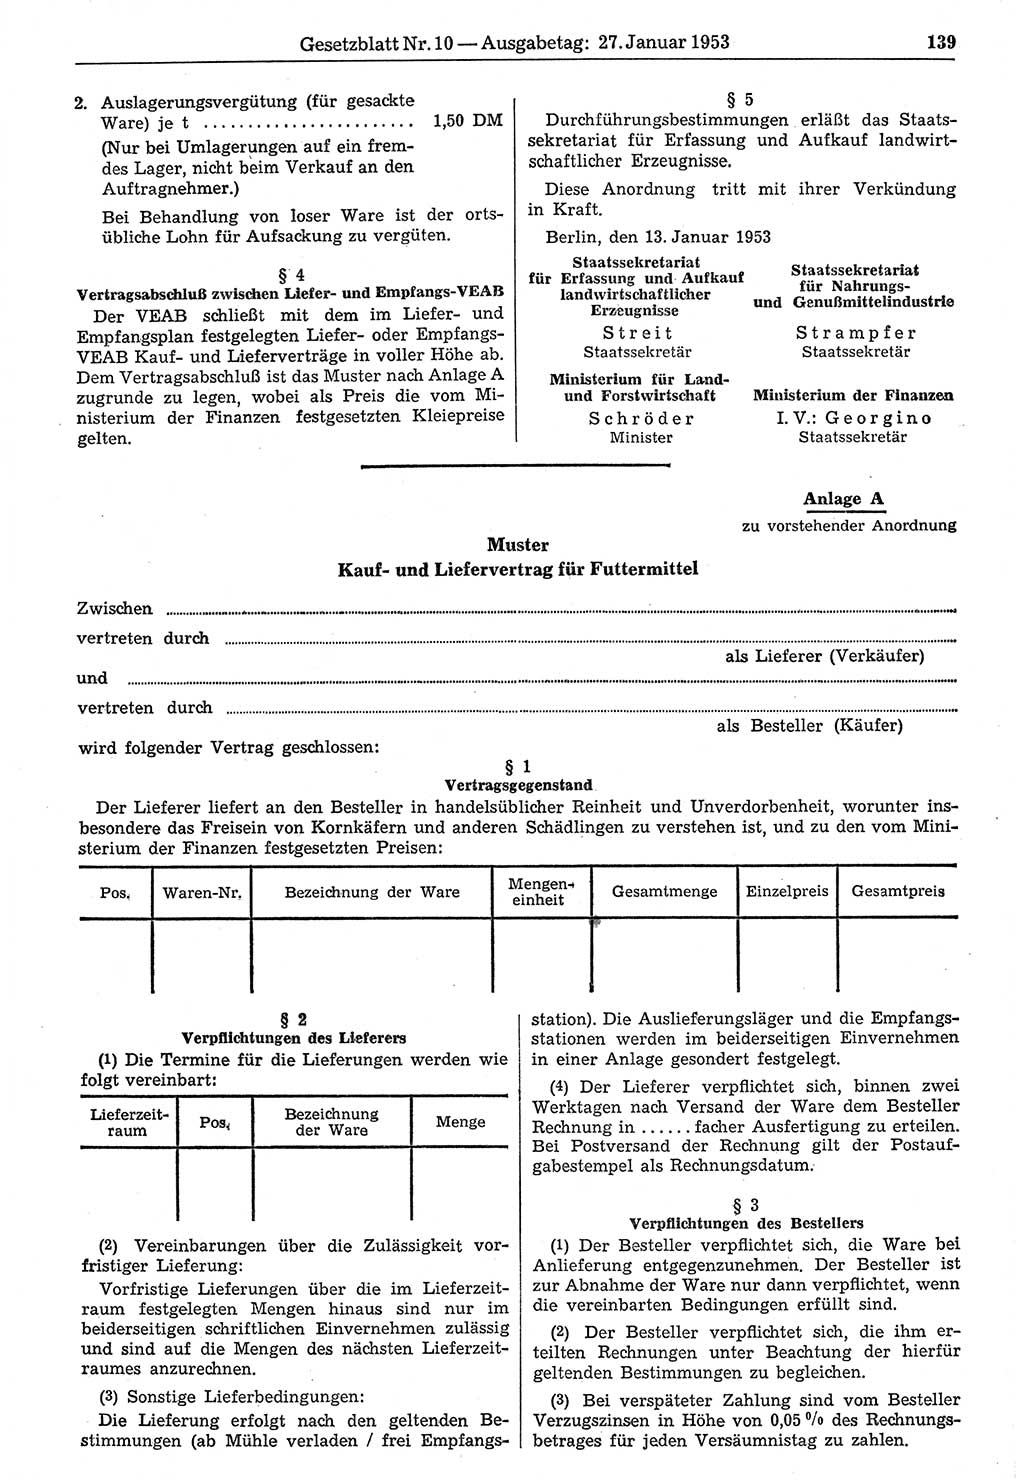 Gesetzblatt (GBl.) der Deutschen Demokratischen Republik (DDR) 1953, Seite 139 (GBl. DDR 1953, S. 139)